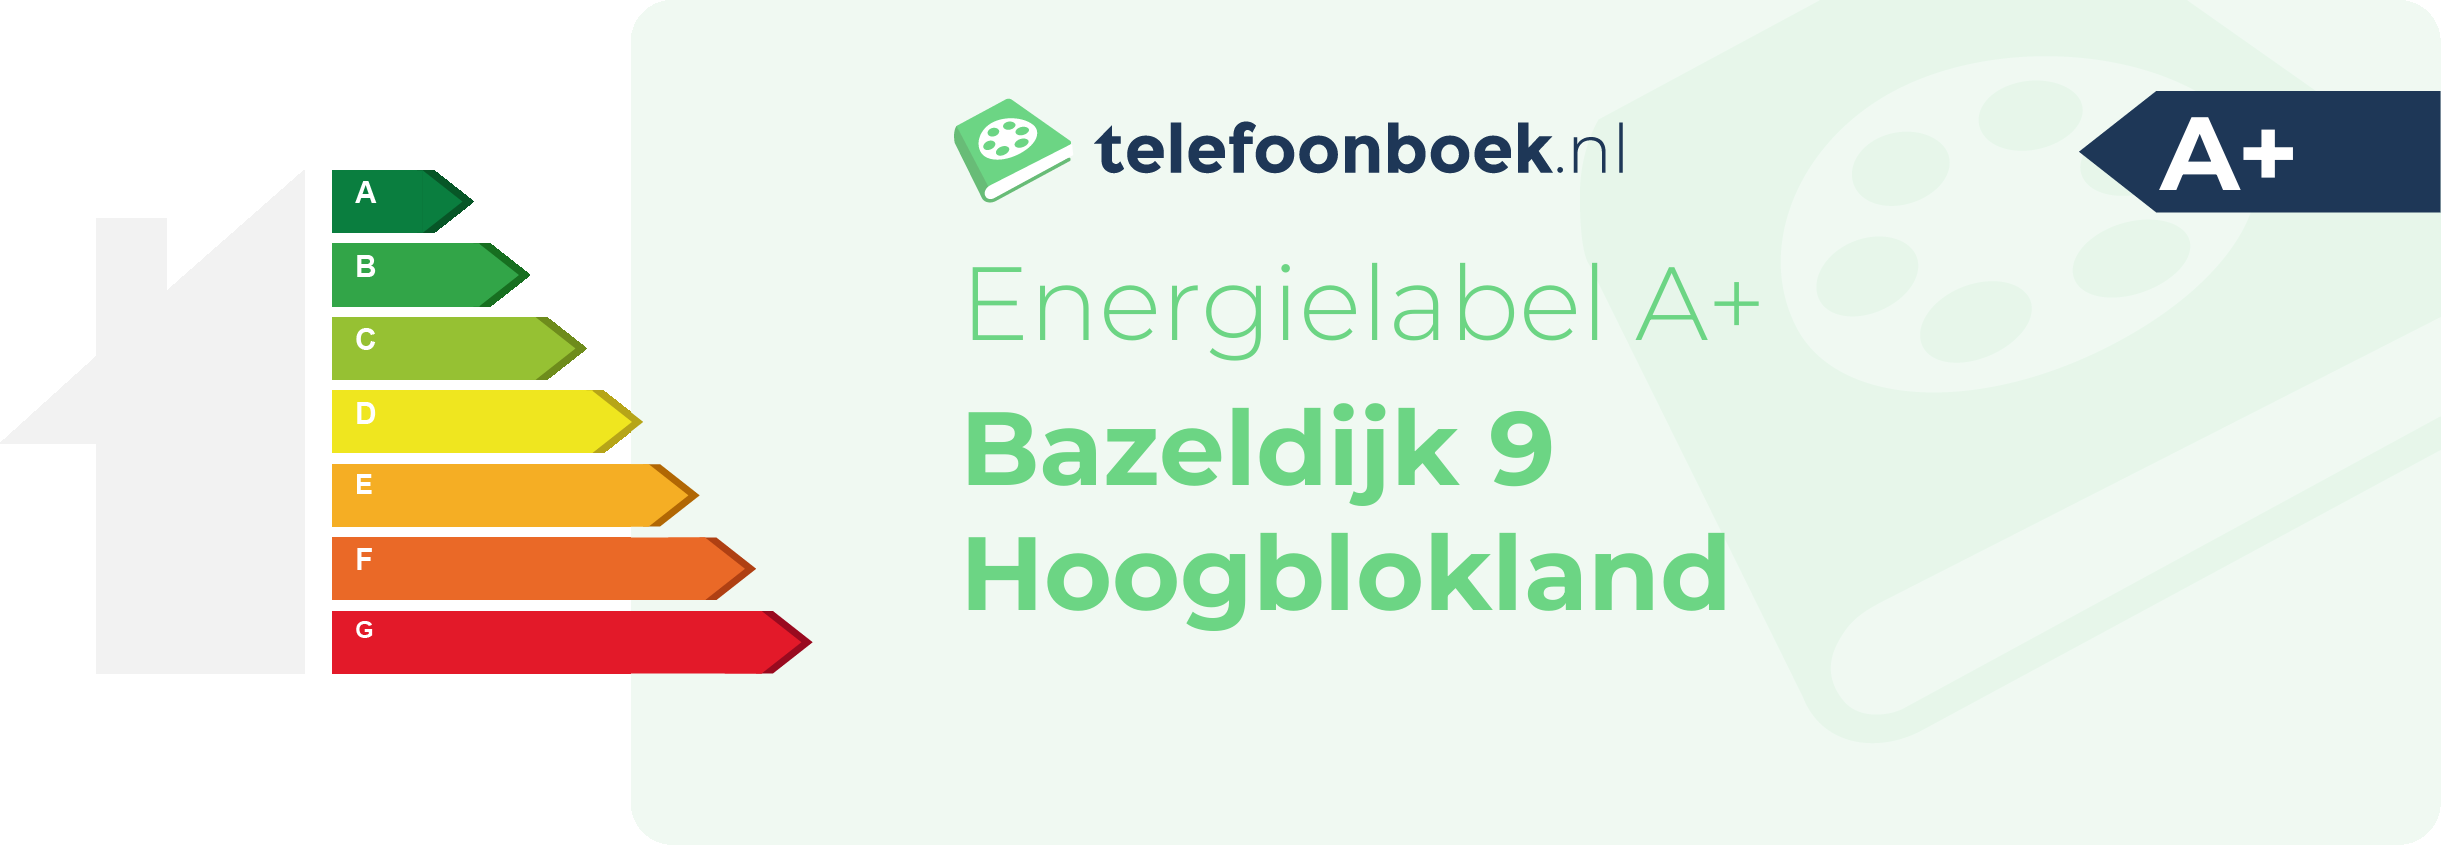 Energielabel Bazeldijk 9 Hoogblokland